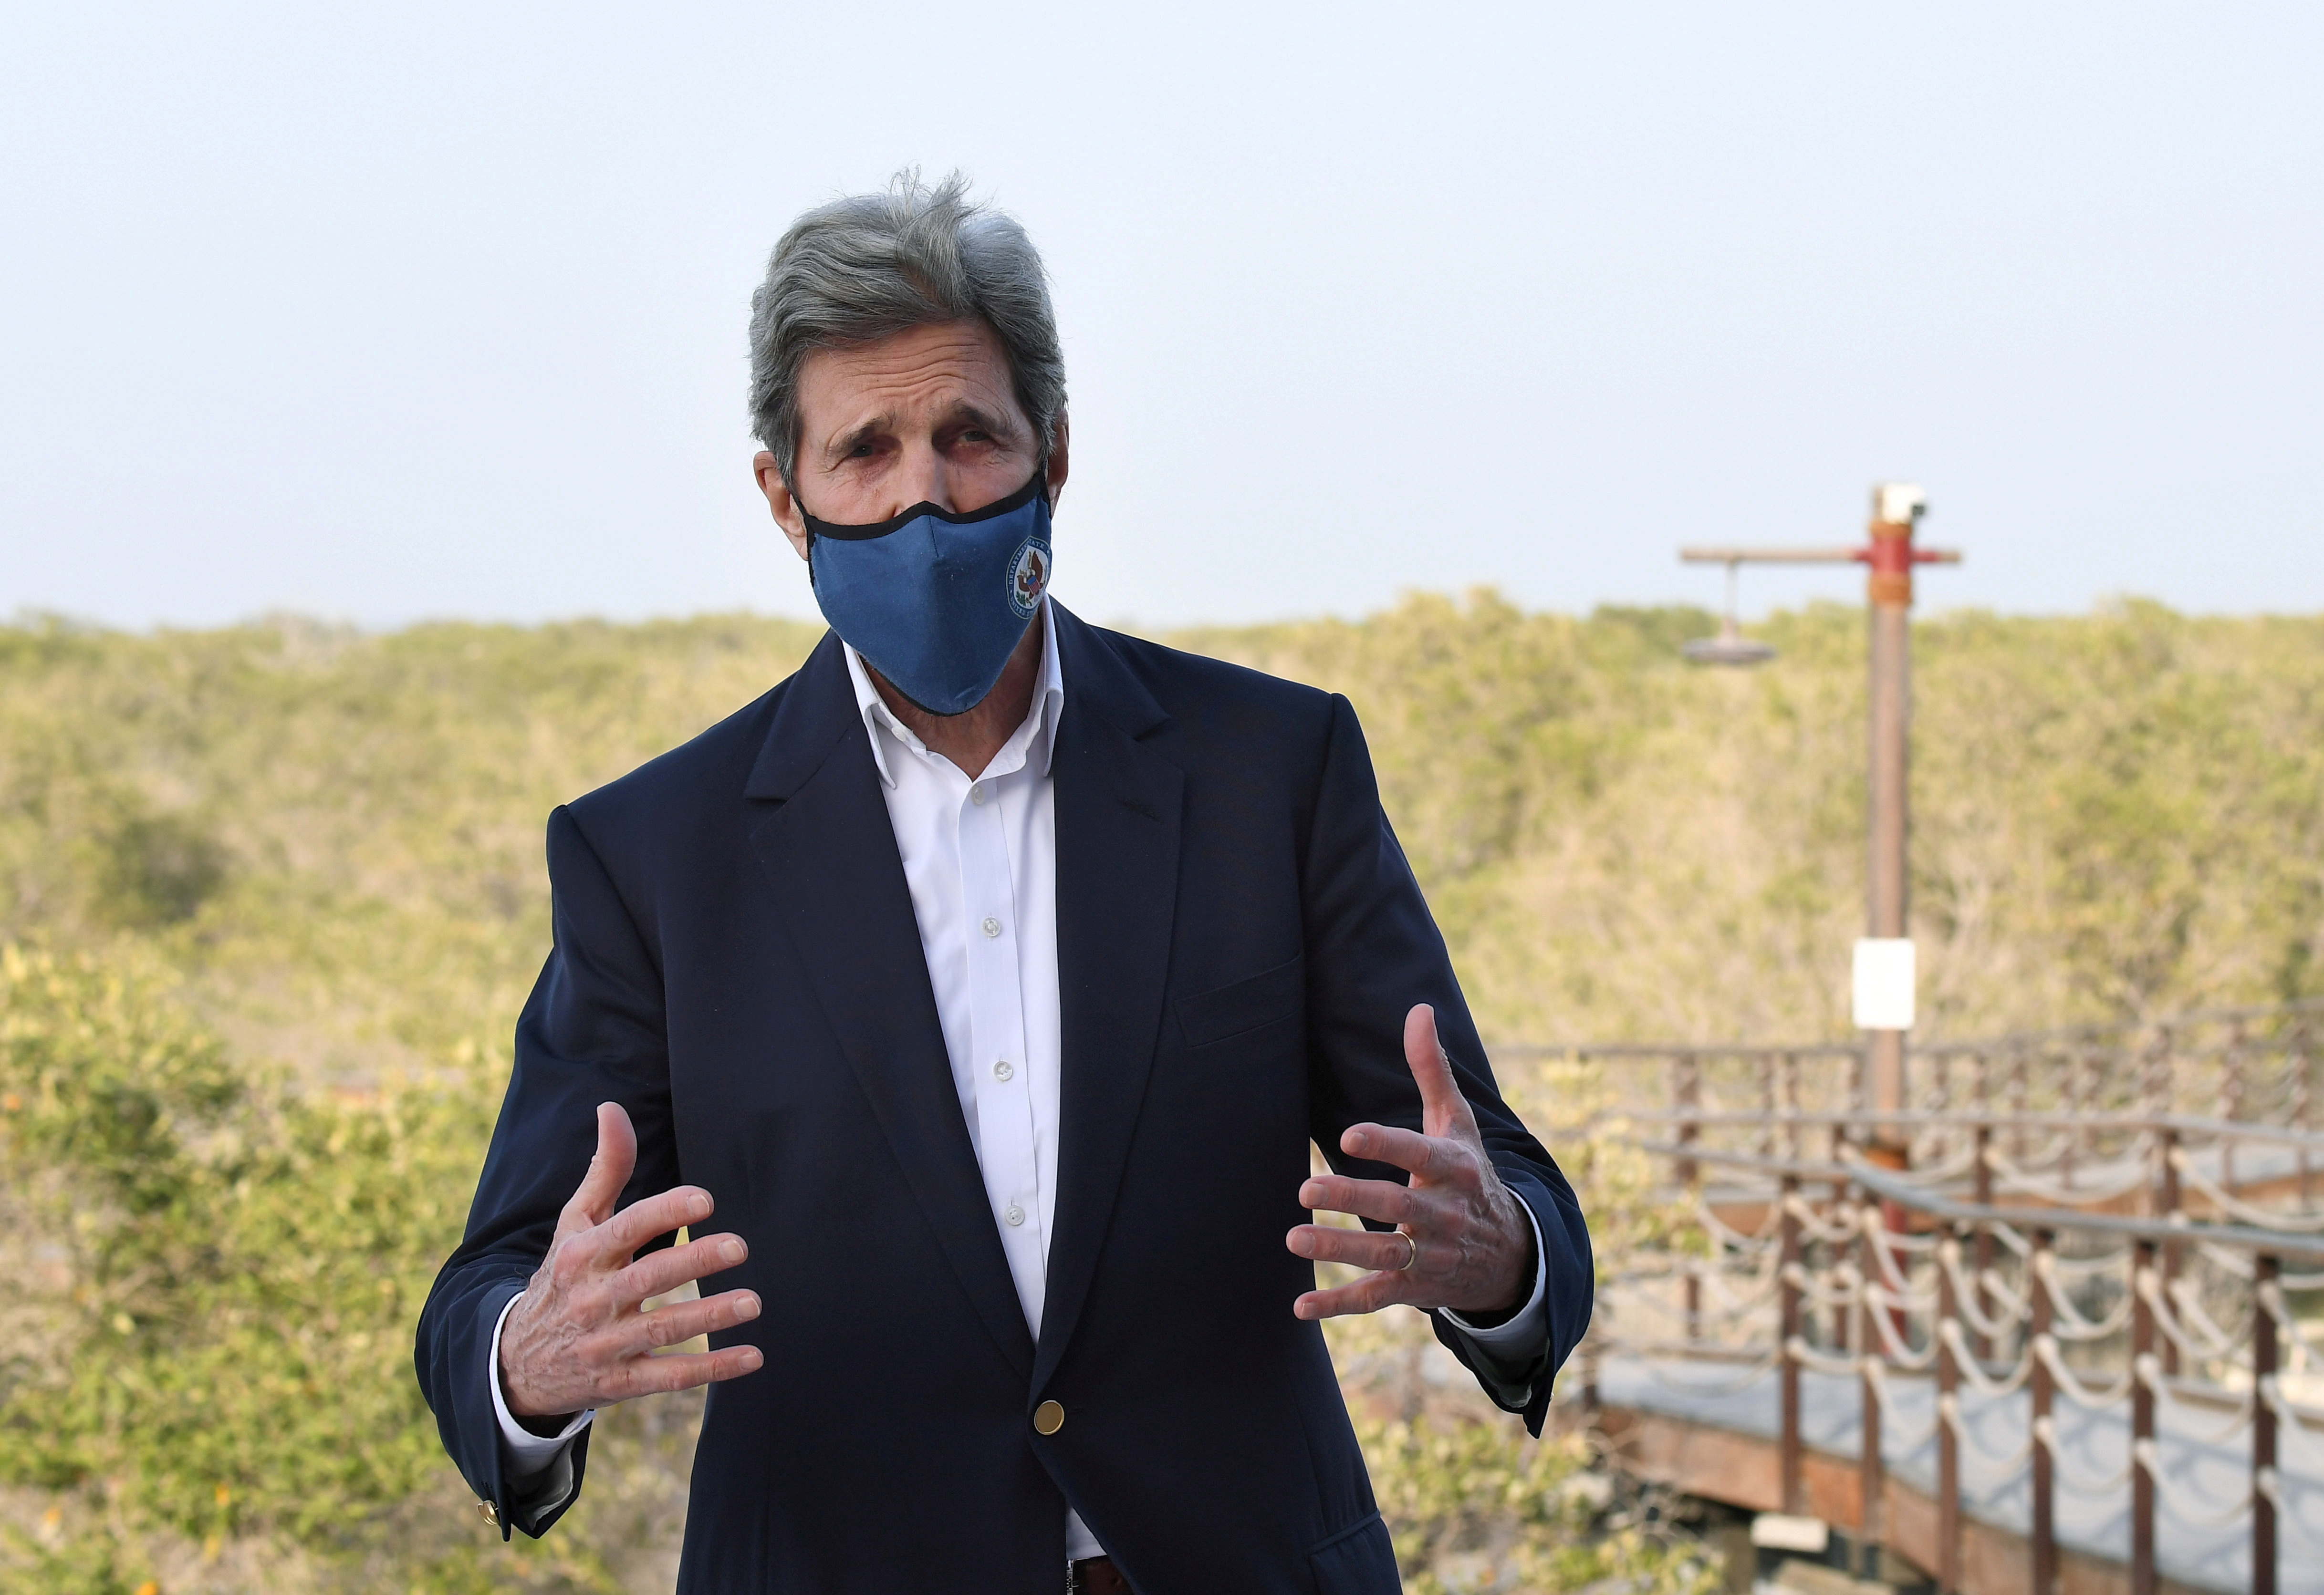 U.S. climate envoy John Kerry speaks in Abu Dhabi